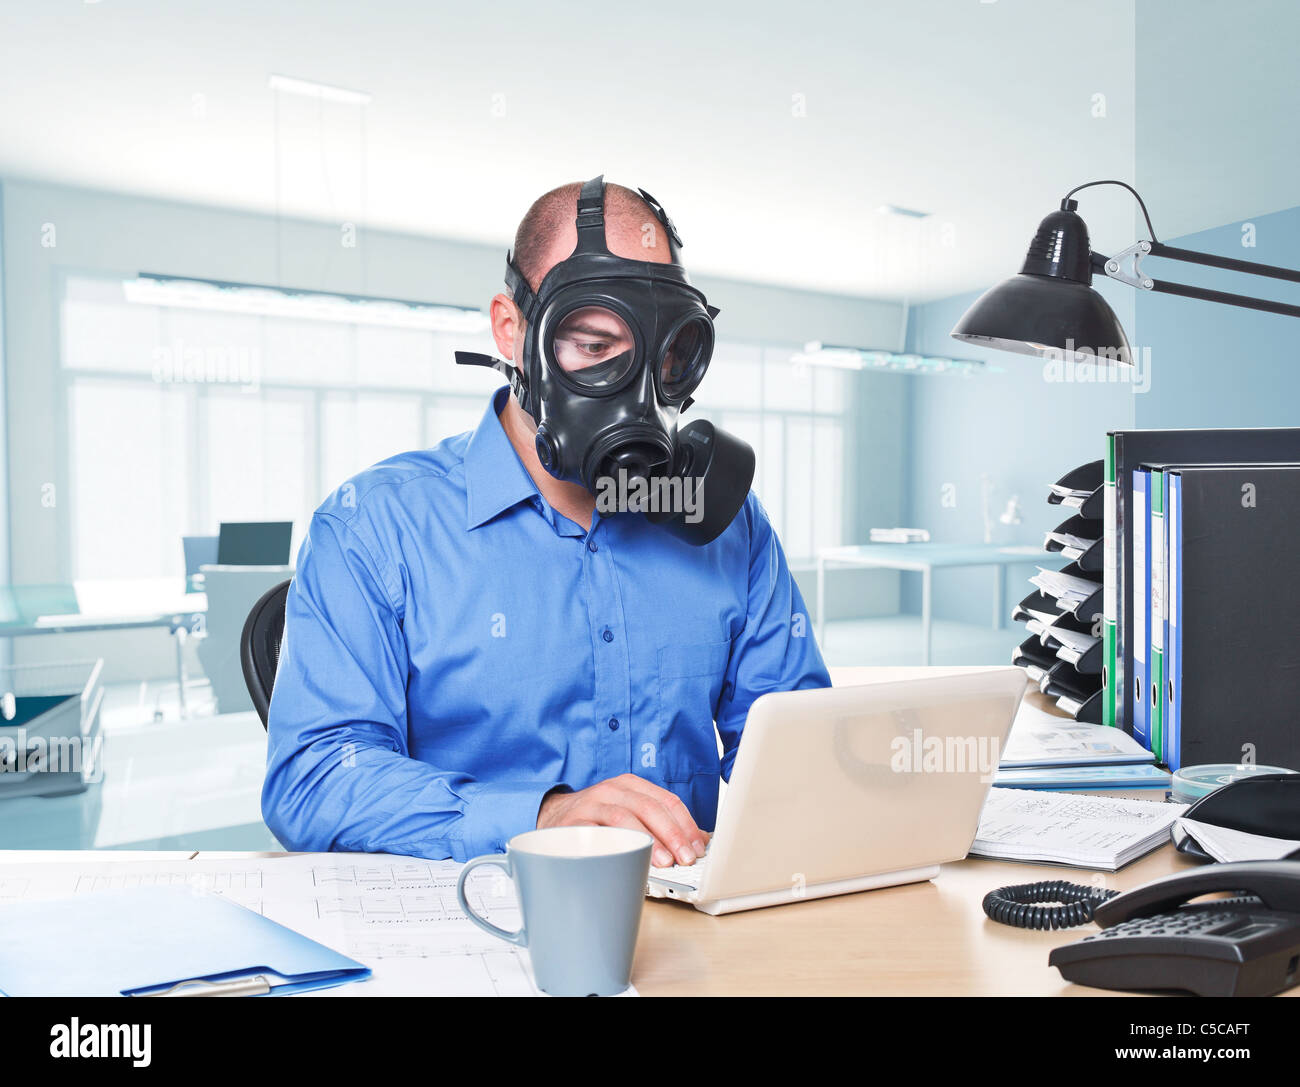 man-wearing-gas-mask-work-with-laptop-C5CAFT.jpg